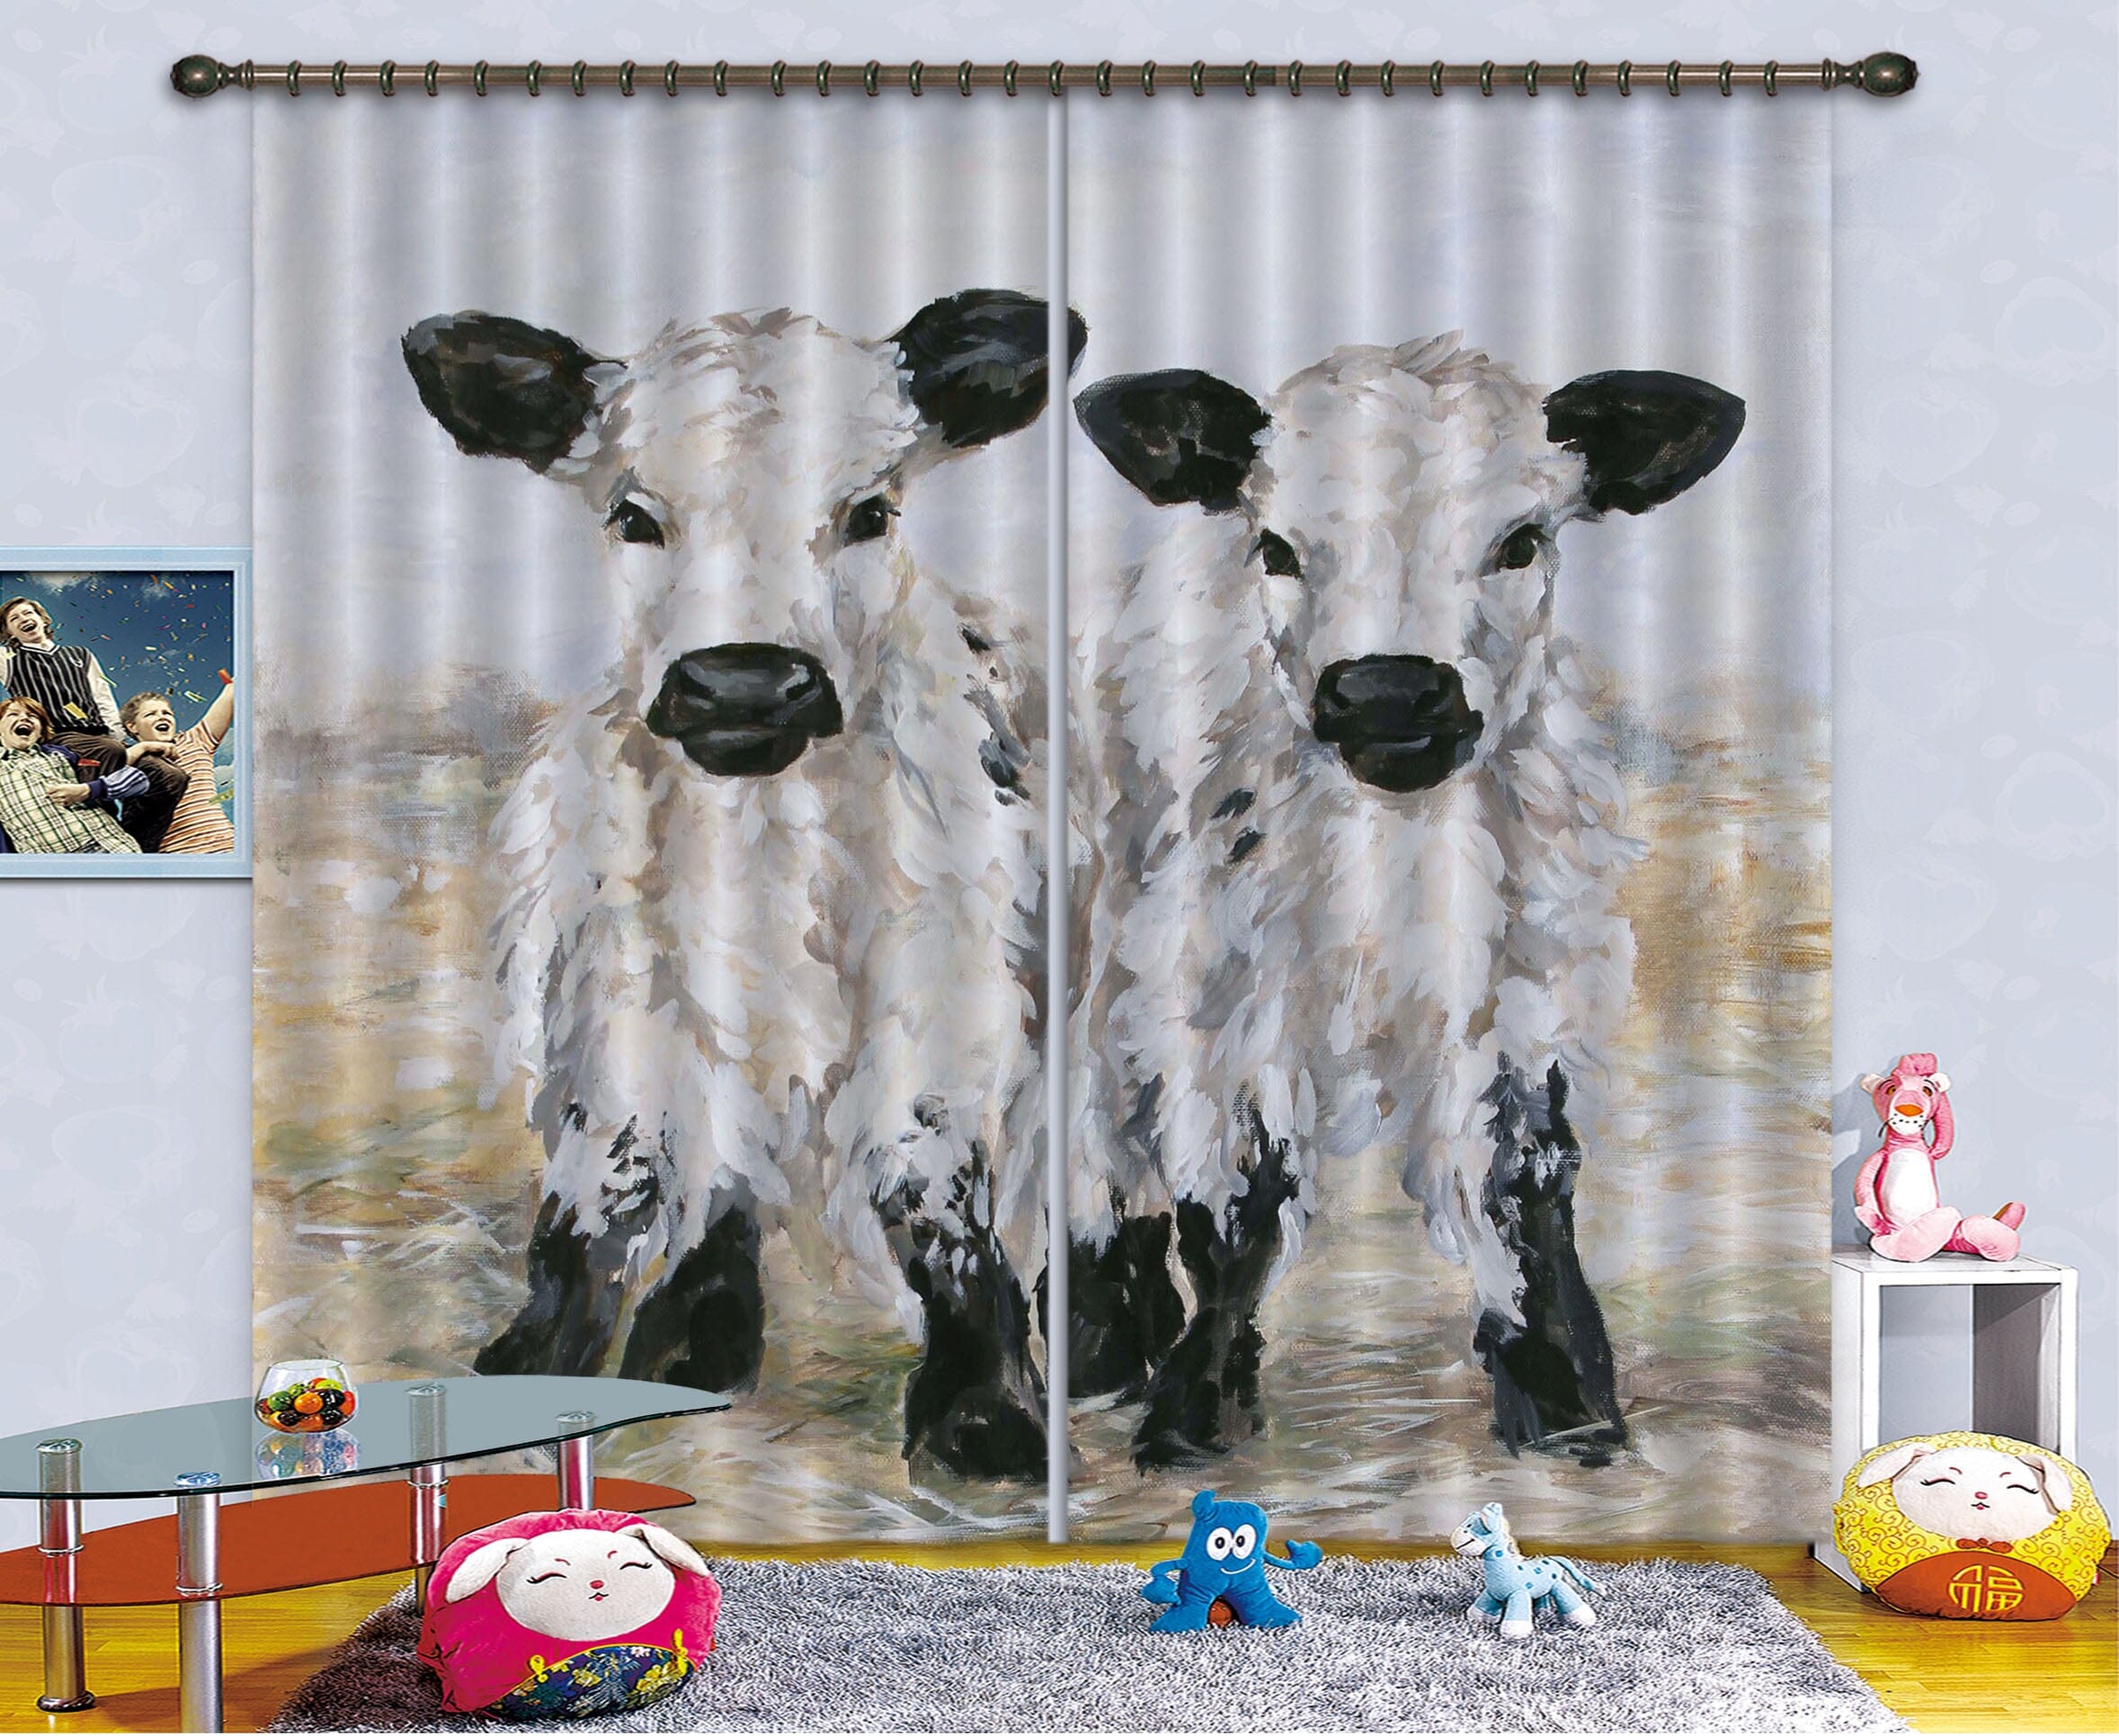 3D Small Cow 048 Debi Coules Curtain Curtains Drapes Curtains AJ Creativity Home 